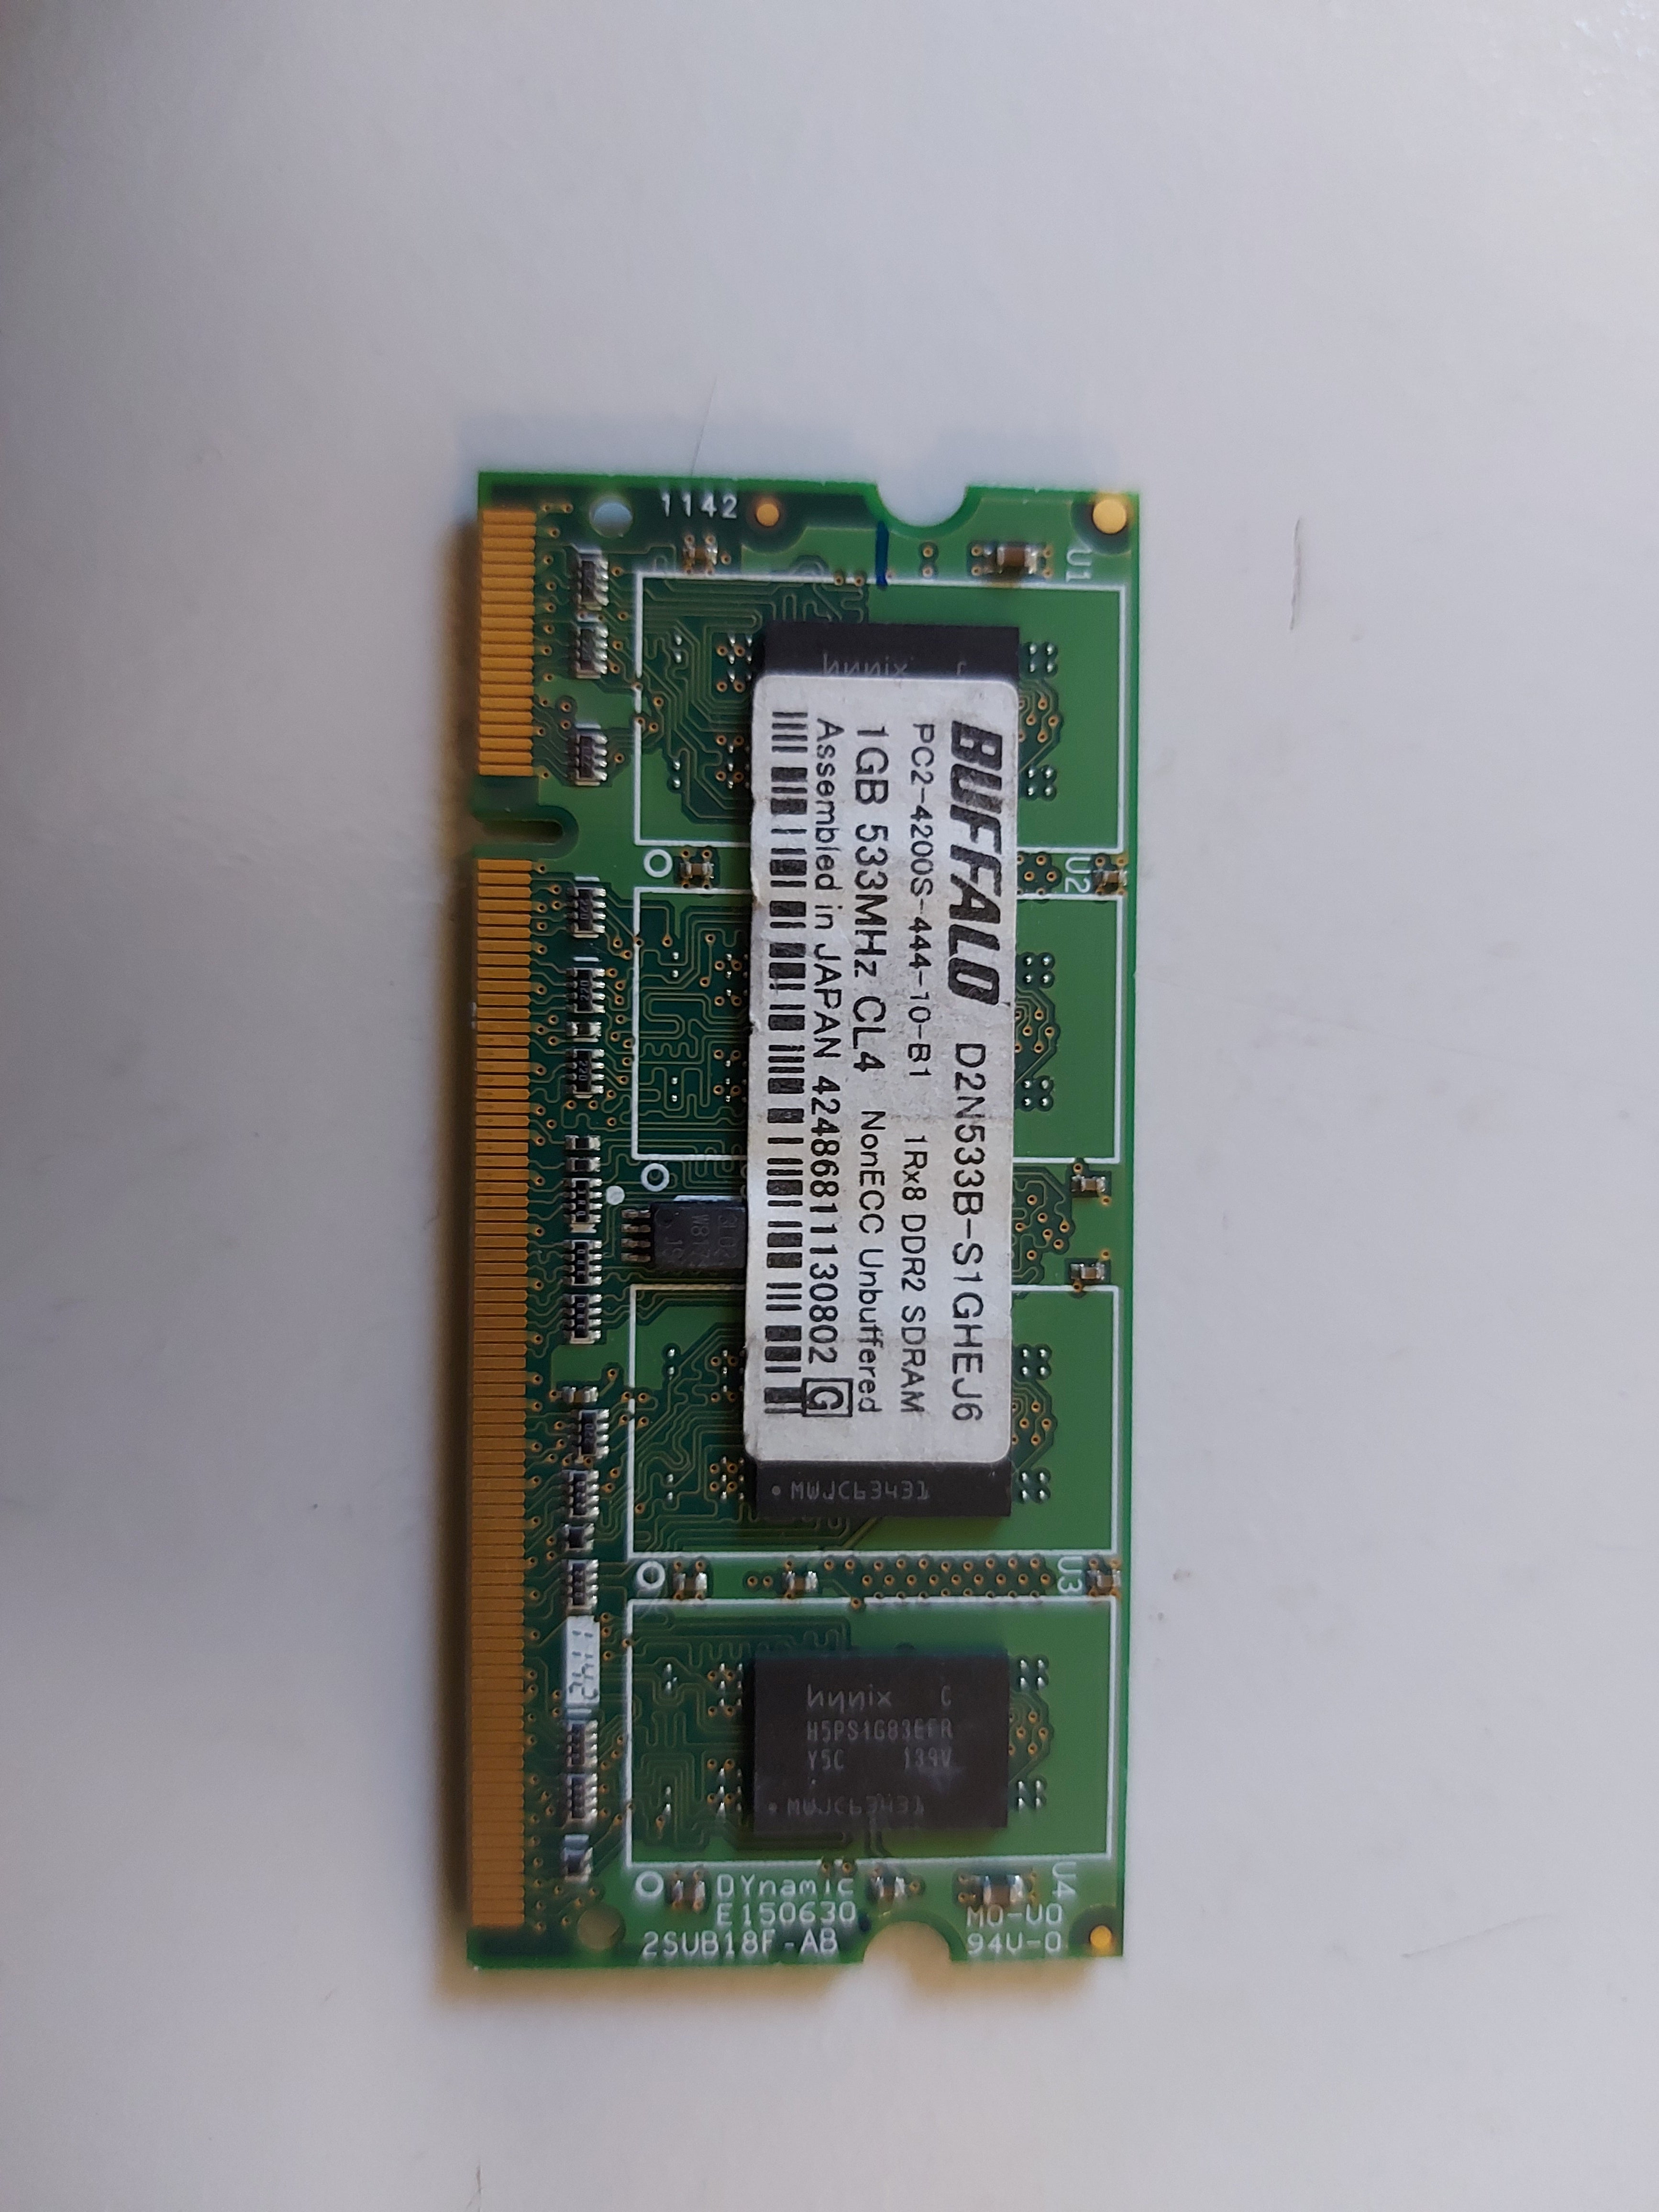 Buffalo 1GB PC2-4200 NonECC Unbuffered CL4 DDR2 SDRAM SODIMM D2N533B-S1GHEJ6